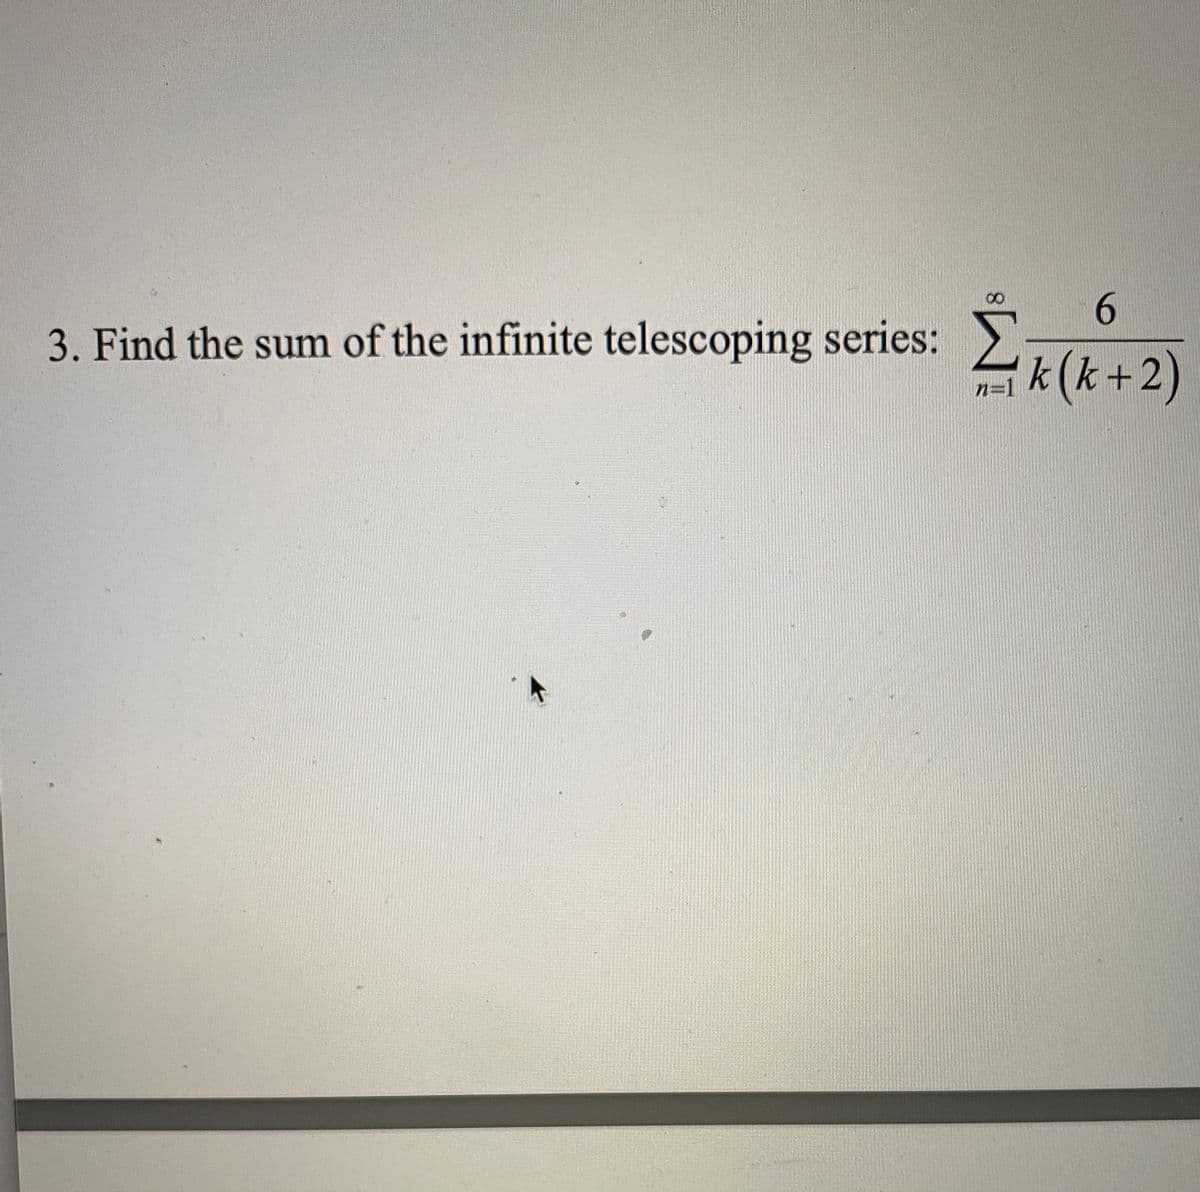 6.
3. Find the sum of the infinite telescoping series:
k(k+2)
n=1
